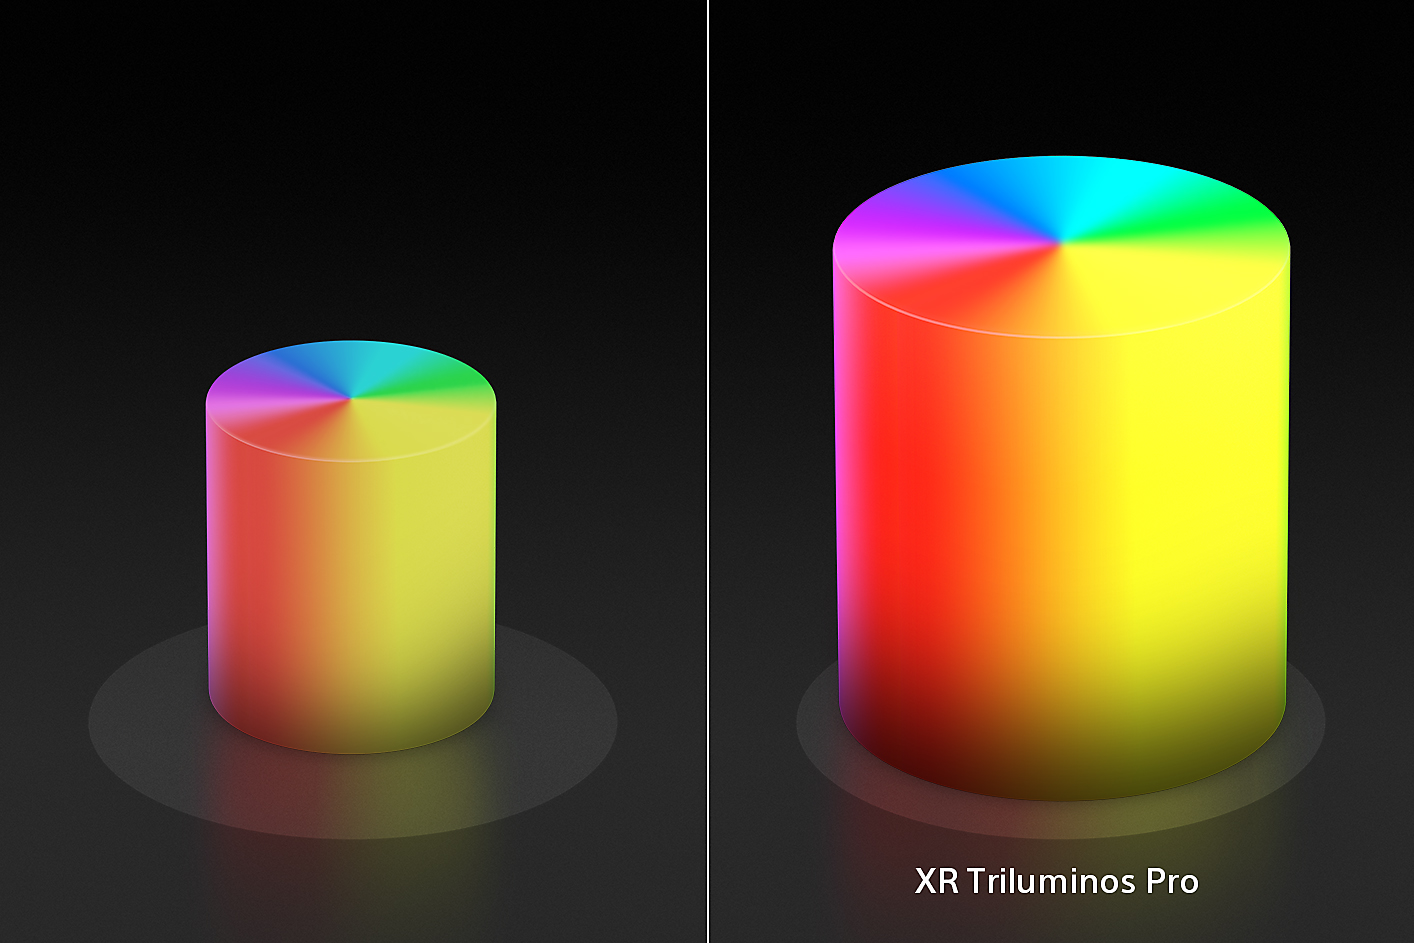 Jaettu näyttö kahdesta kynttilän muotoisesta värikartiosta, vasemmalla oleva kartio on pienempi ja oikealla olevan kartion värit ja pinnat ovat XR Triluminos Pro -tekniikan tehostamia